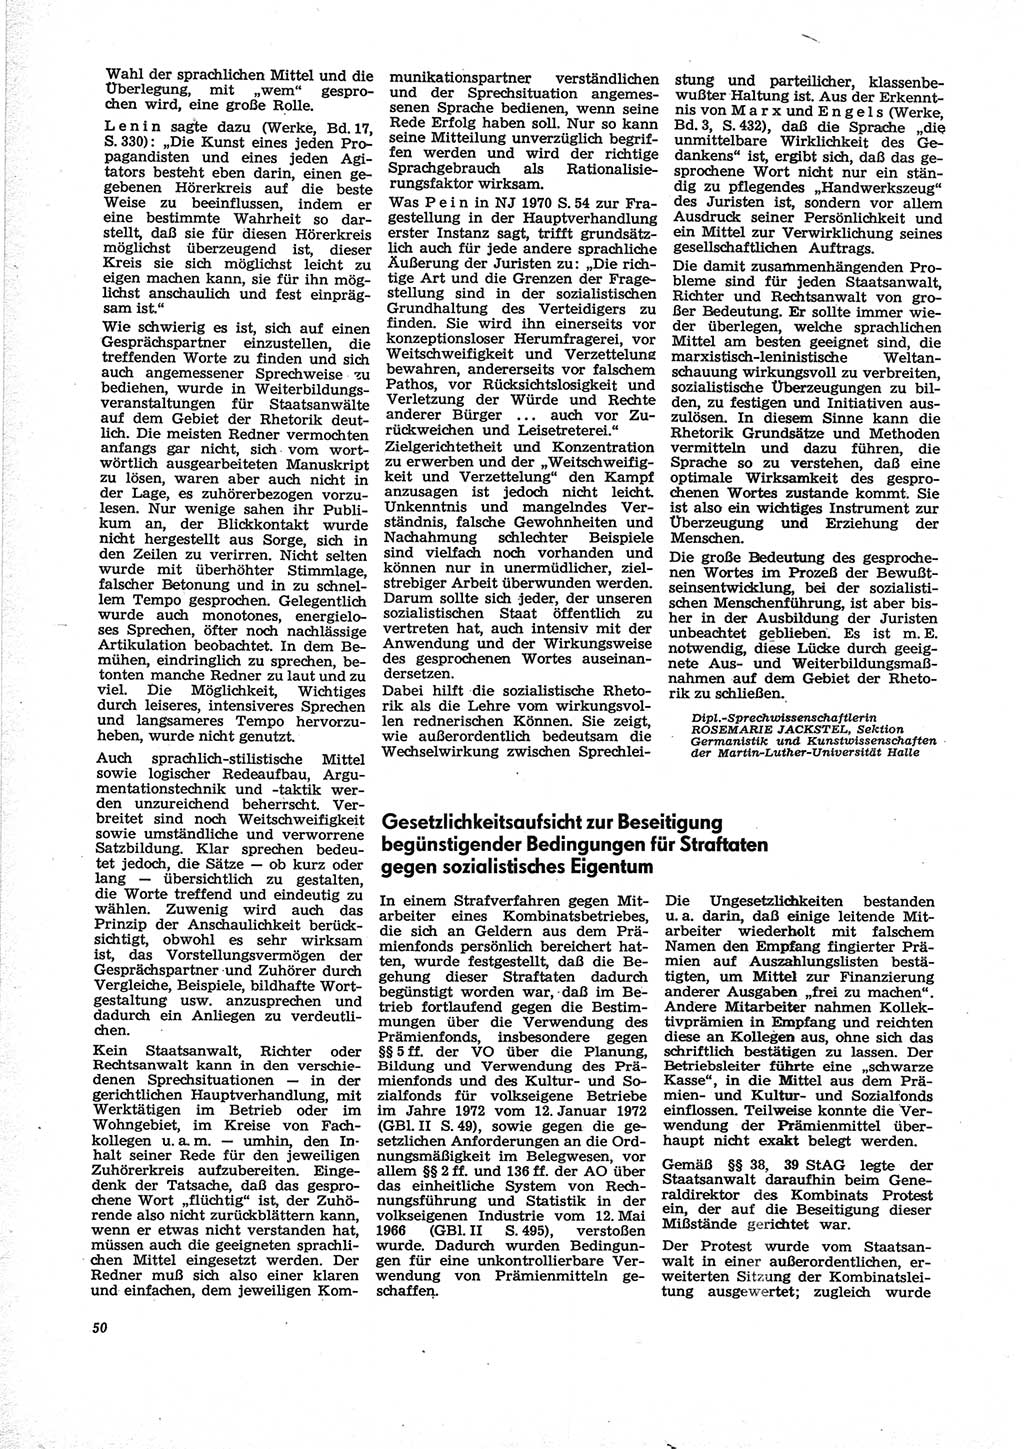 Neue Justiz (NJ), Zeitschrift für Recht und Rechtswissenschaft [Deutsche Demokratische Republik (DDR)], 28. Jahrgang 1974, Seite 50 (NJ DDR 1974, S. 50)